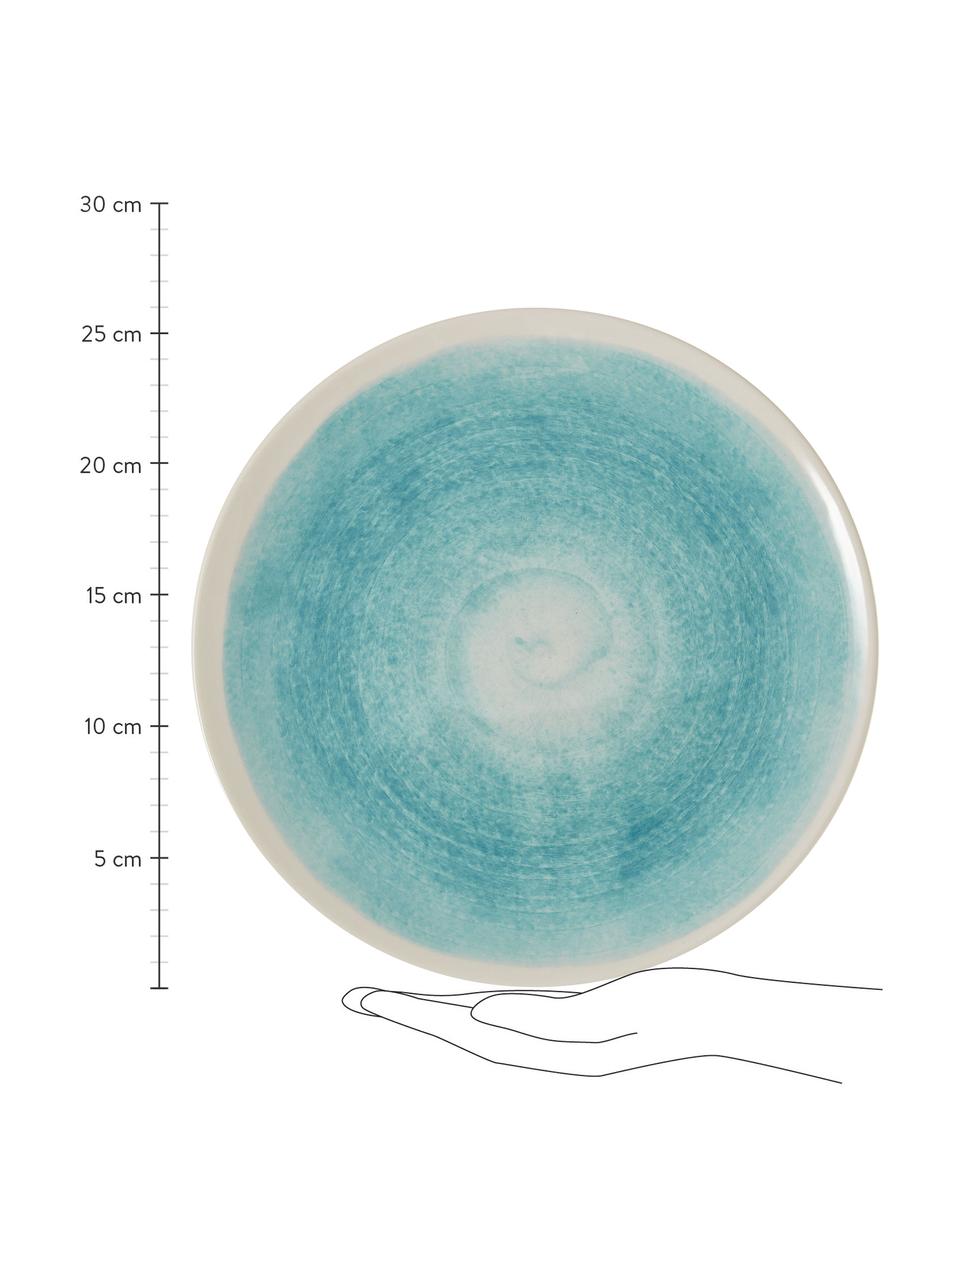 Handgemachte Speiseteller Pure matt/glänzend mit Farbverlauf, 6 Stück, Keramik, Blau, Weiß, Ø 26 cm